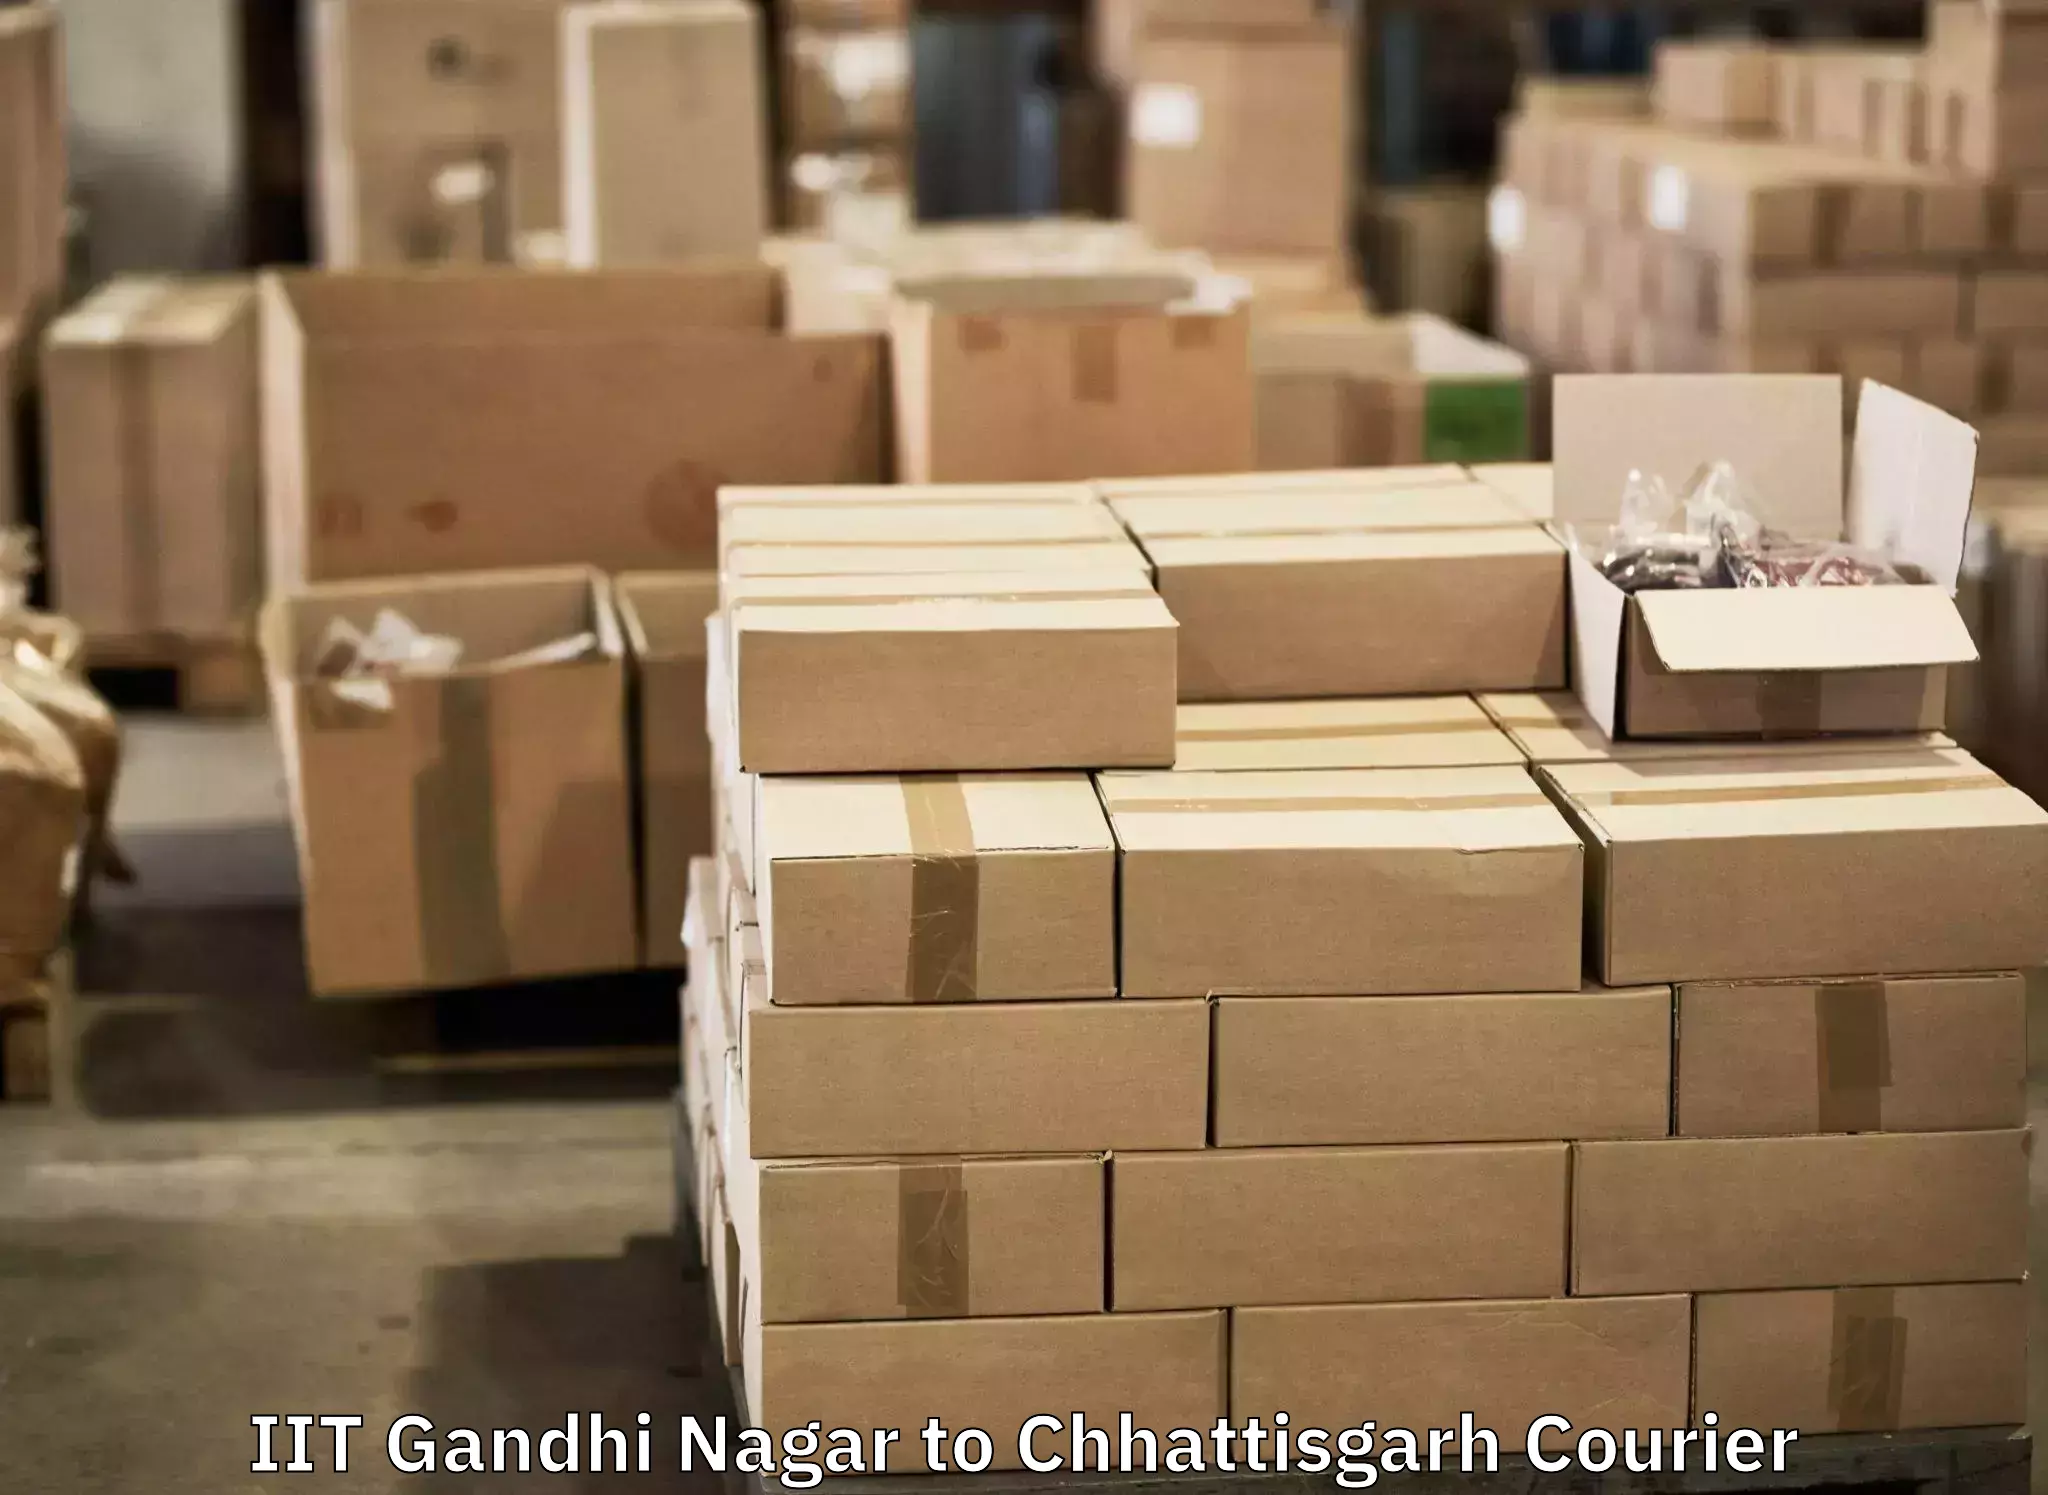 Baggage transport management IIT Gandhi Nagar to Bargidih